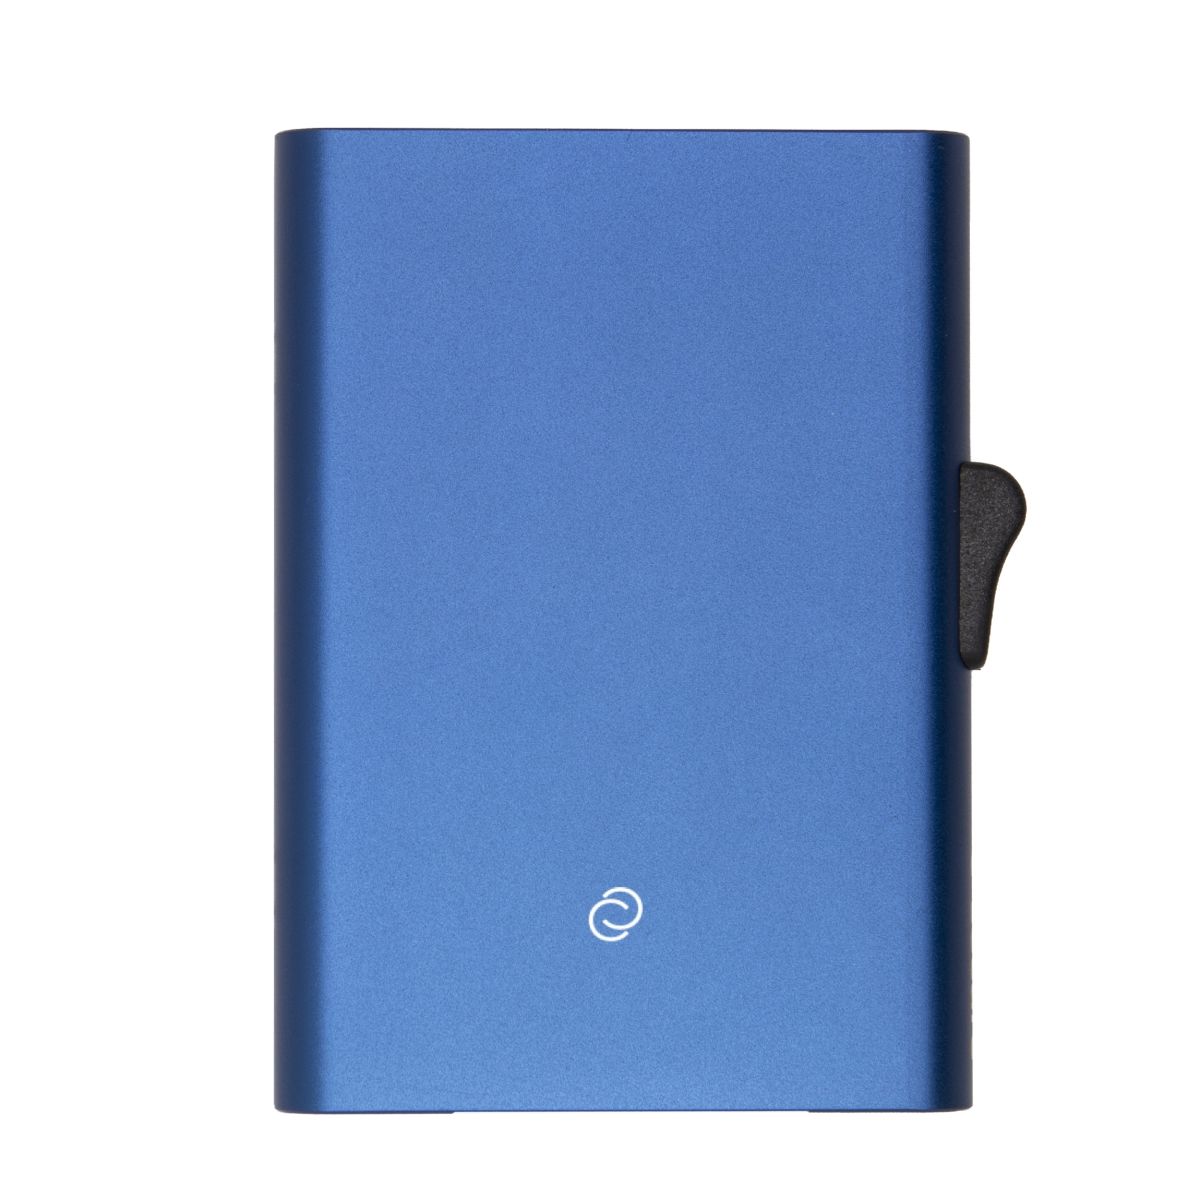 C-Secure ארנק אלומיניום מינימלסטי דגם XL - כחול